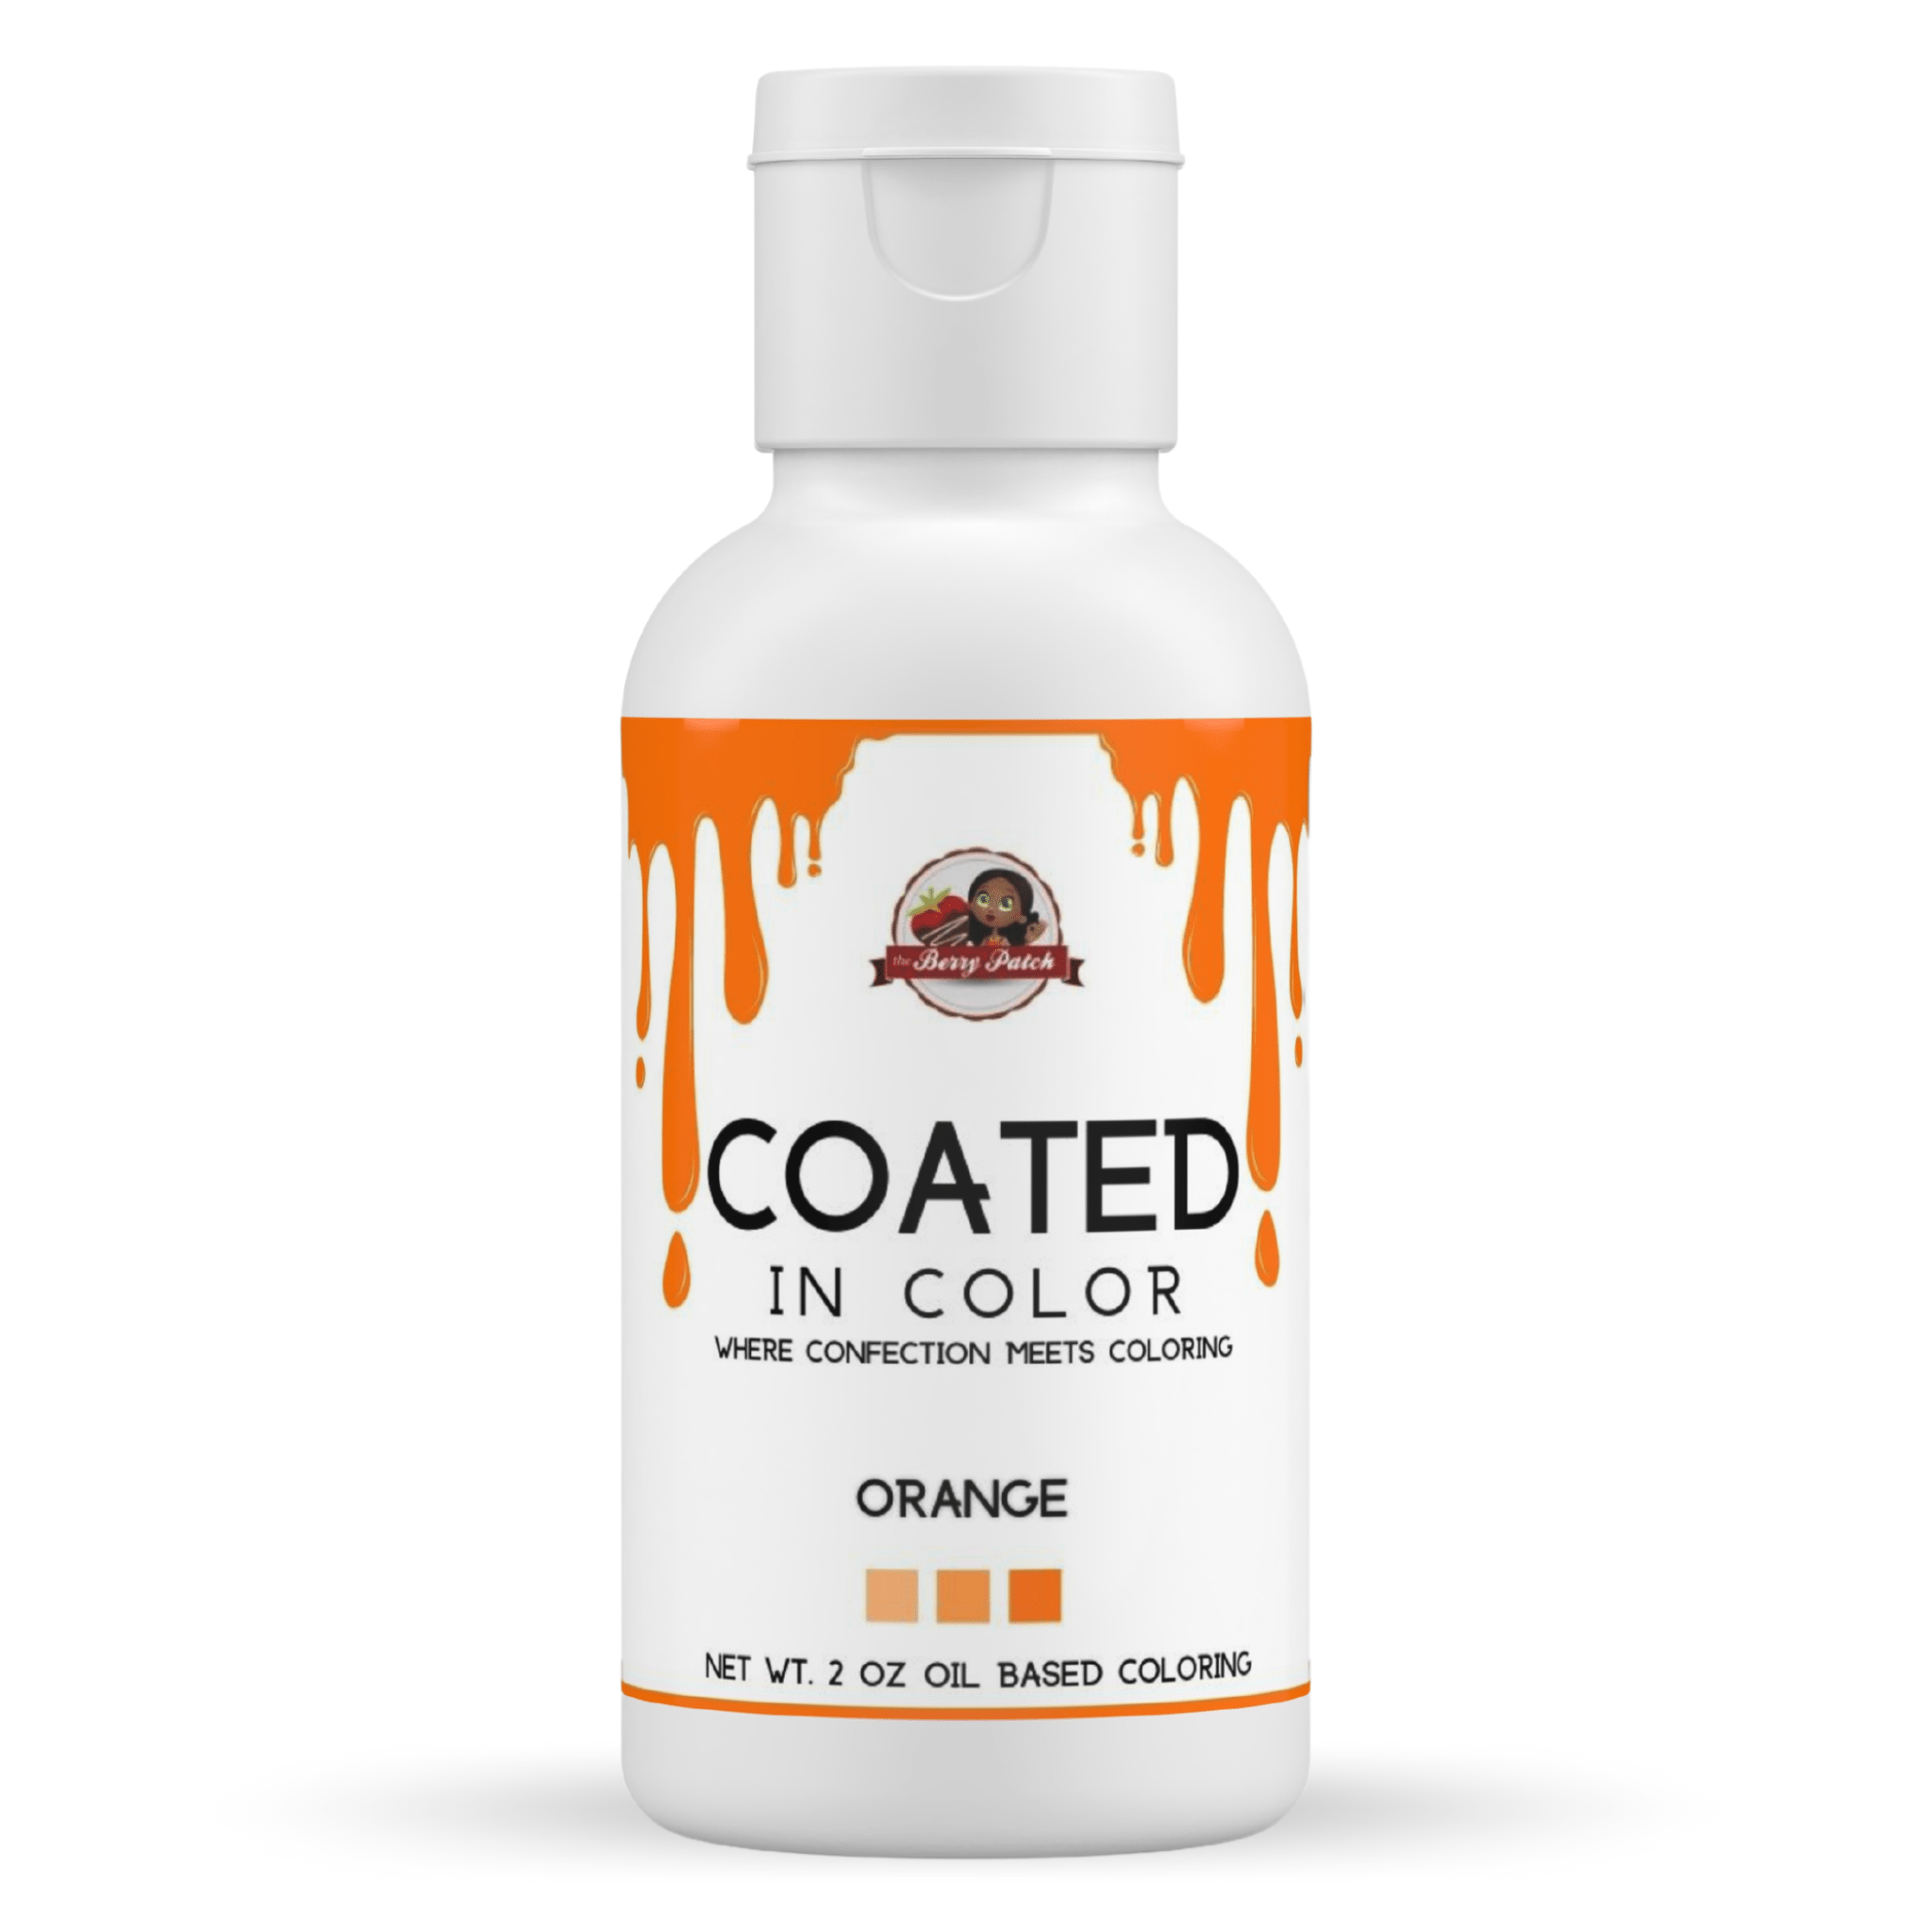 Orange Oil Based Coloring